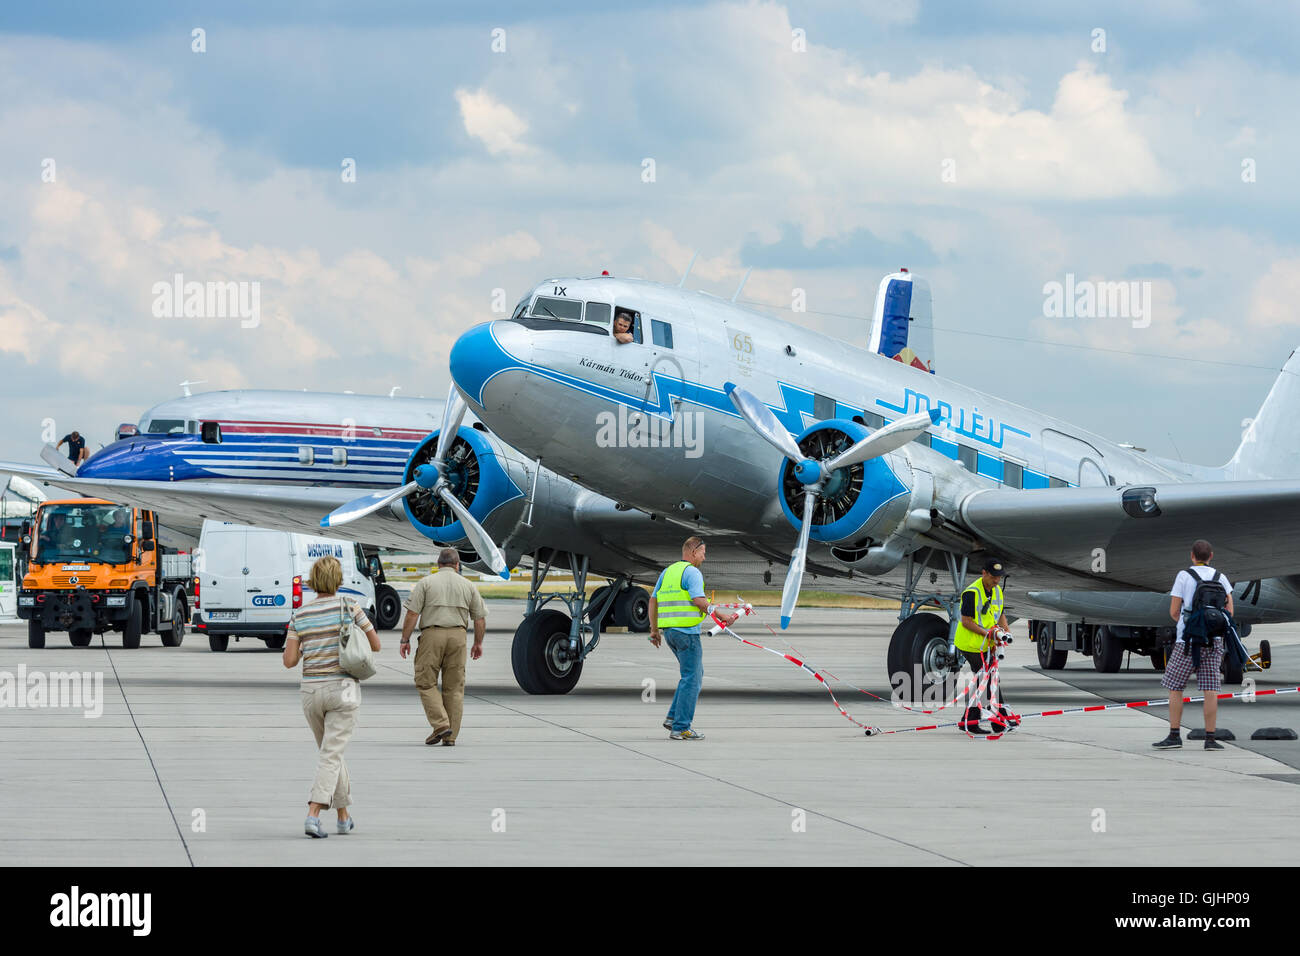 BERLIN, ALLEMAGNE - 02 juin 2016 : Avion soviétique Lisunov Li-2, compagnie aérienne hongroise alev'. ILA Berlin Air Show Exhibition 2016 Banque D'Images